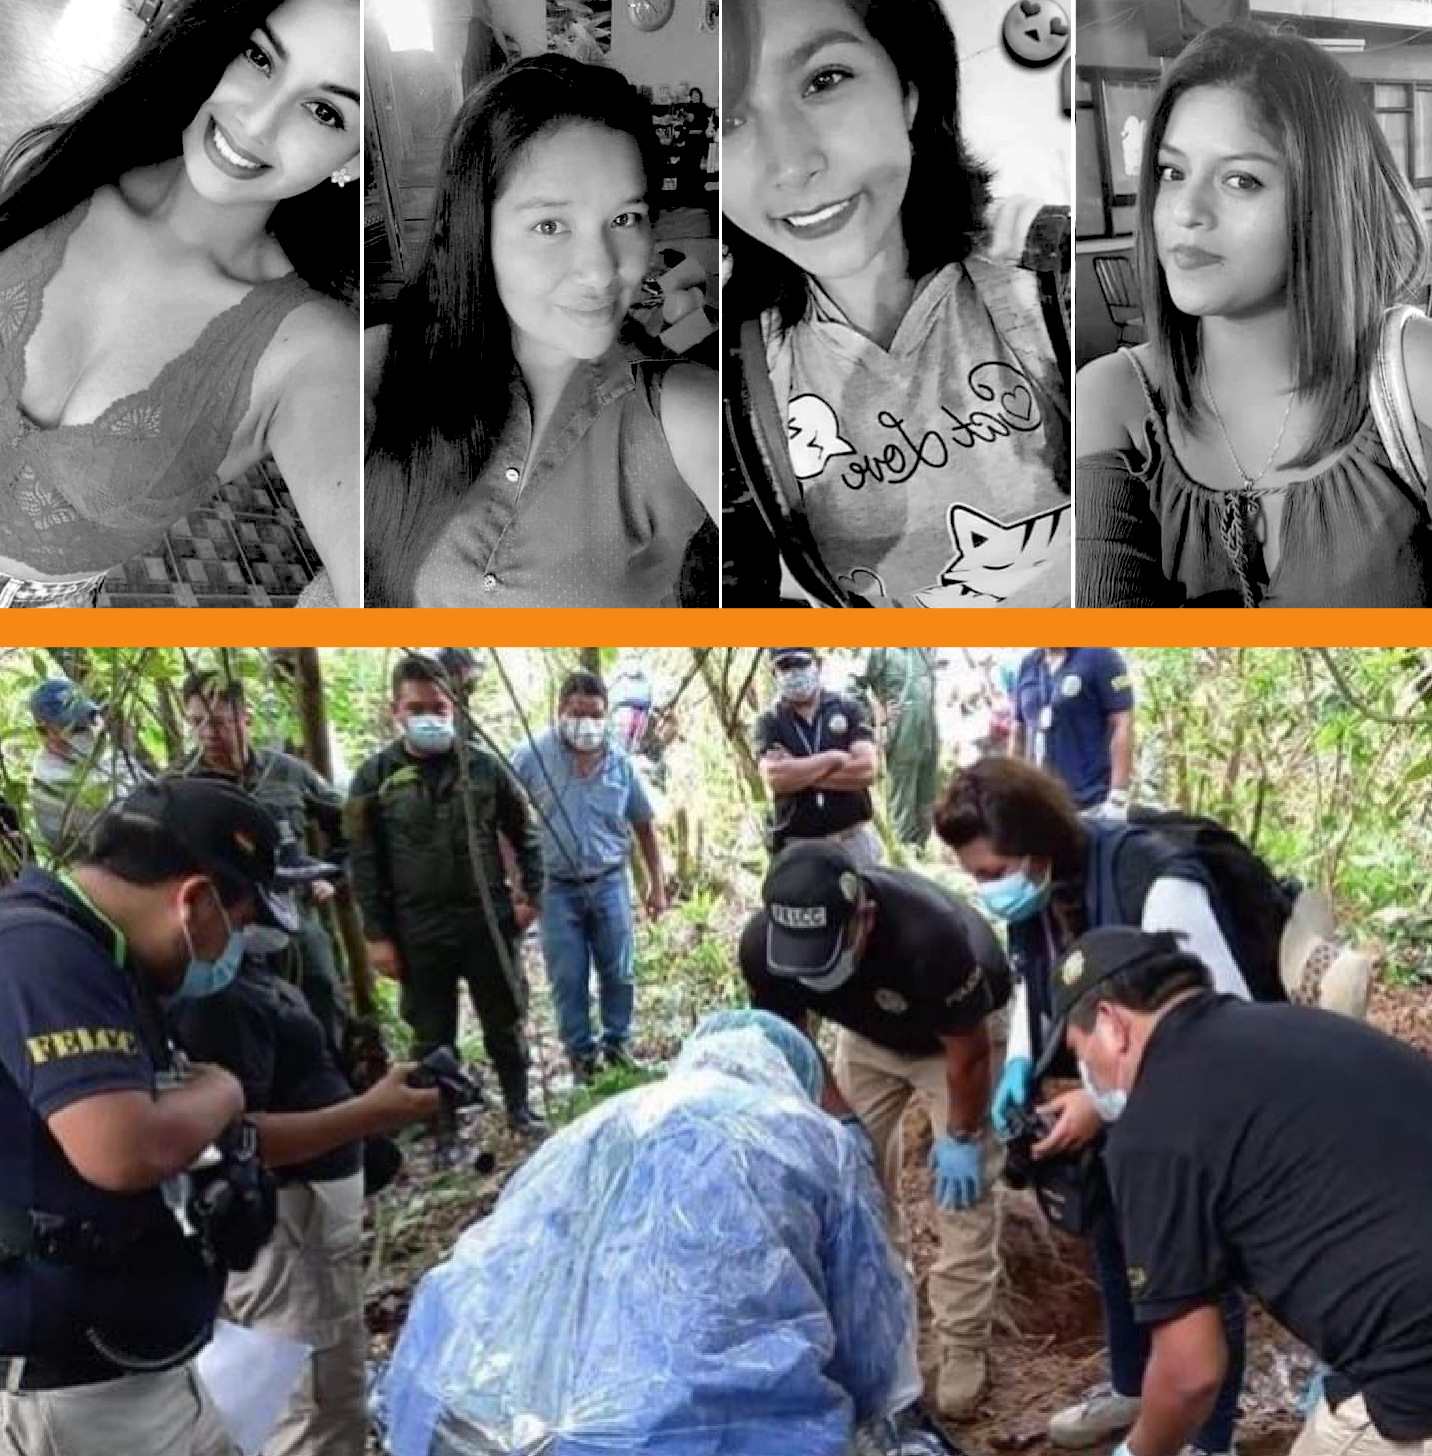 Las cuatro jóvenes desaparecieron y fueron asesinadas entre 2017 y 2020 / RRSS / LOS TIEMPOS